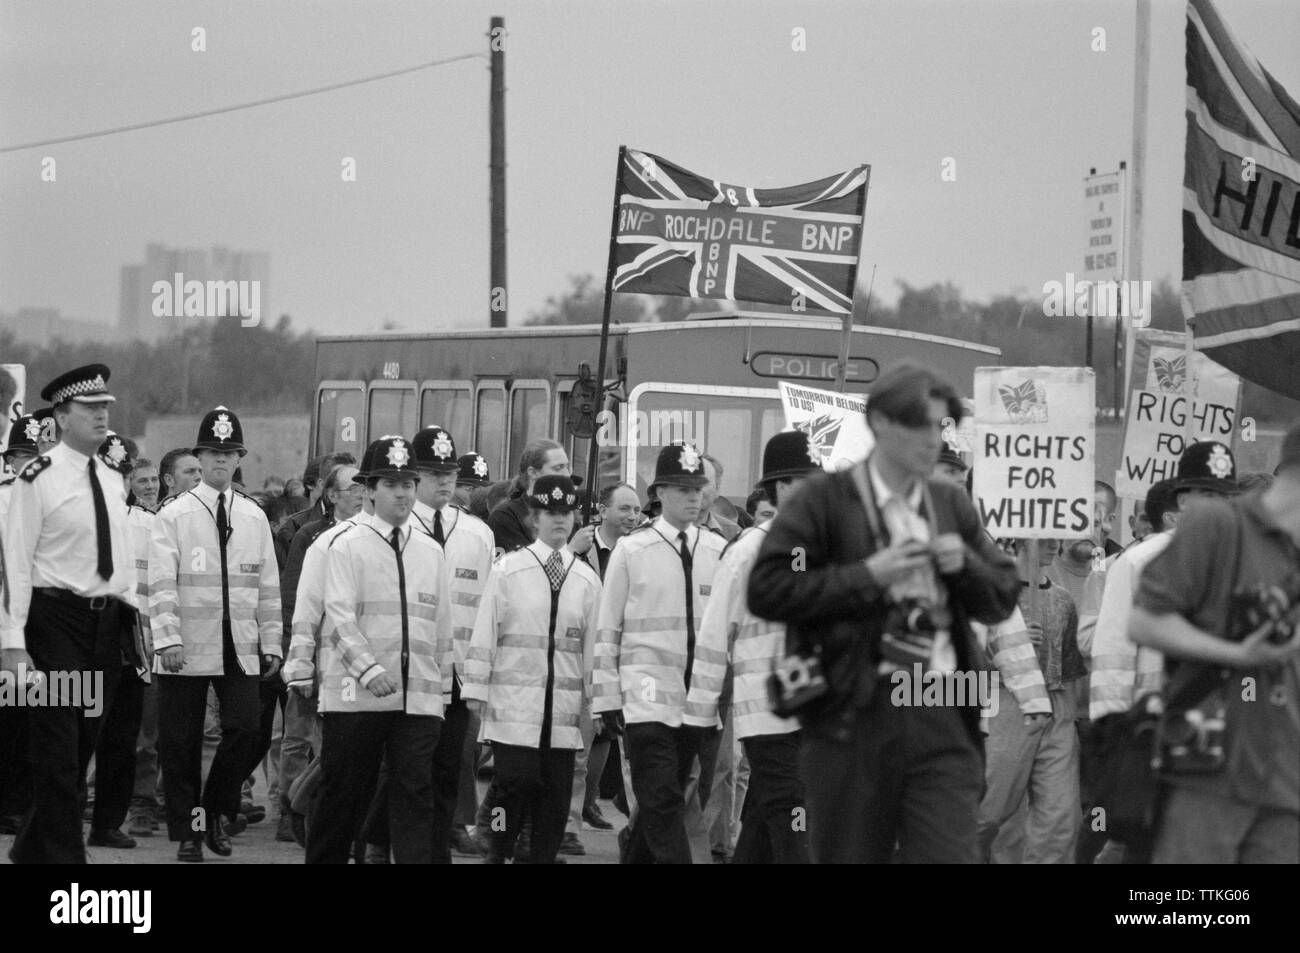 Una dimostrazione di marzo nella zona est di Londra, Inghilterra, detenute da BNP, British National Party, una estrema destra partito politico attivo dal 1982 fino a oggi. Un banner da Rochdale British National Party può essere visto. Foto Stock